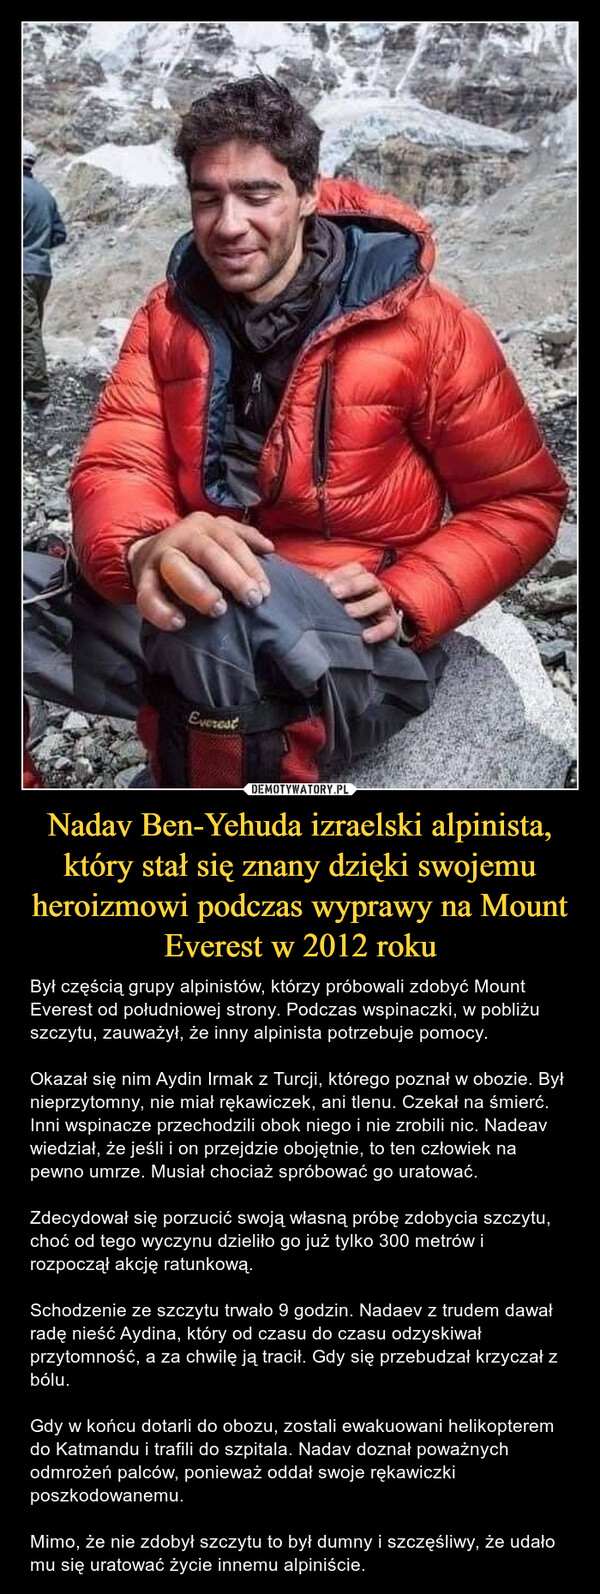 Nadav Ben-Yehuda izraelski alpinista, który stał się znany dzięki swojemu heroizmowi podczas wyprawy na Mount Everest w 2012 roku